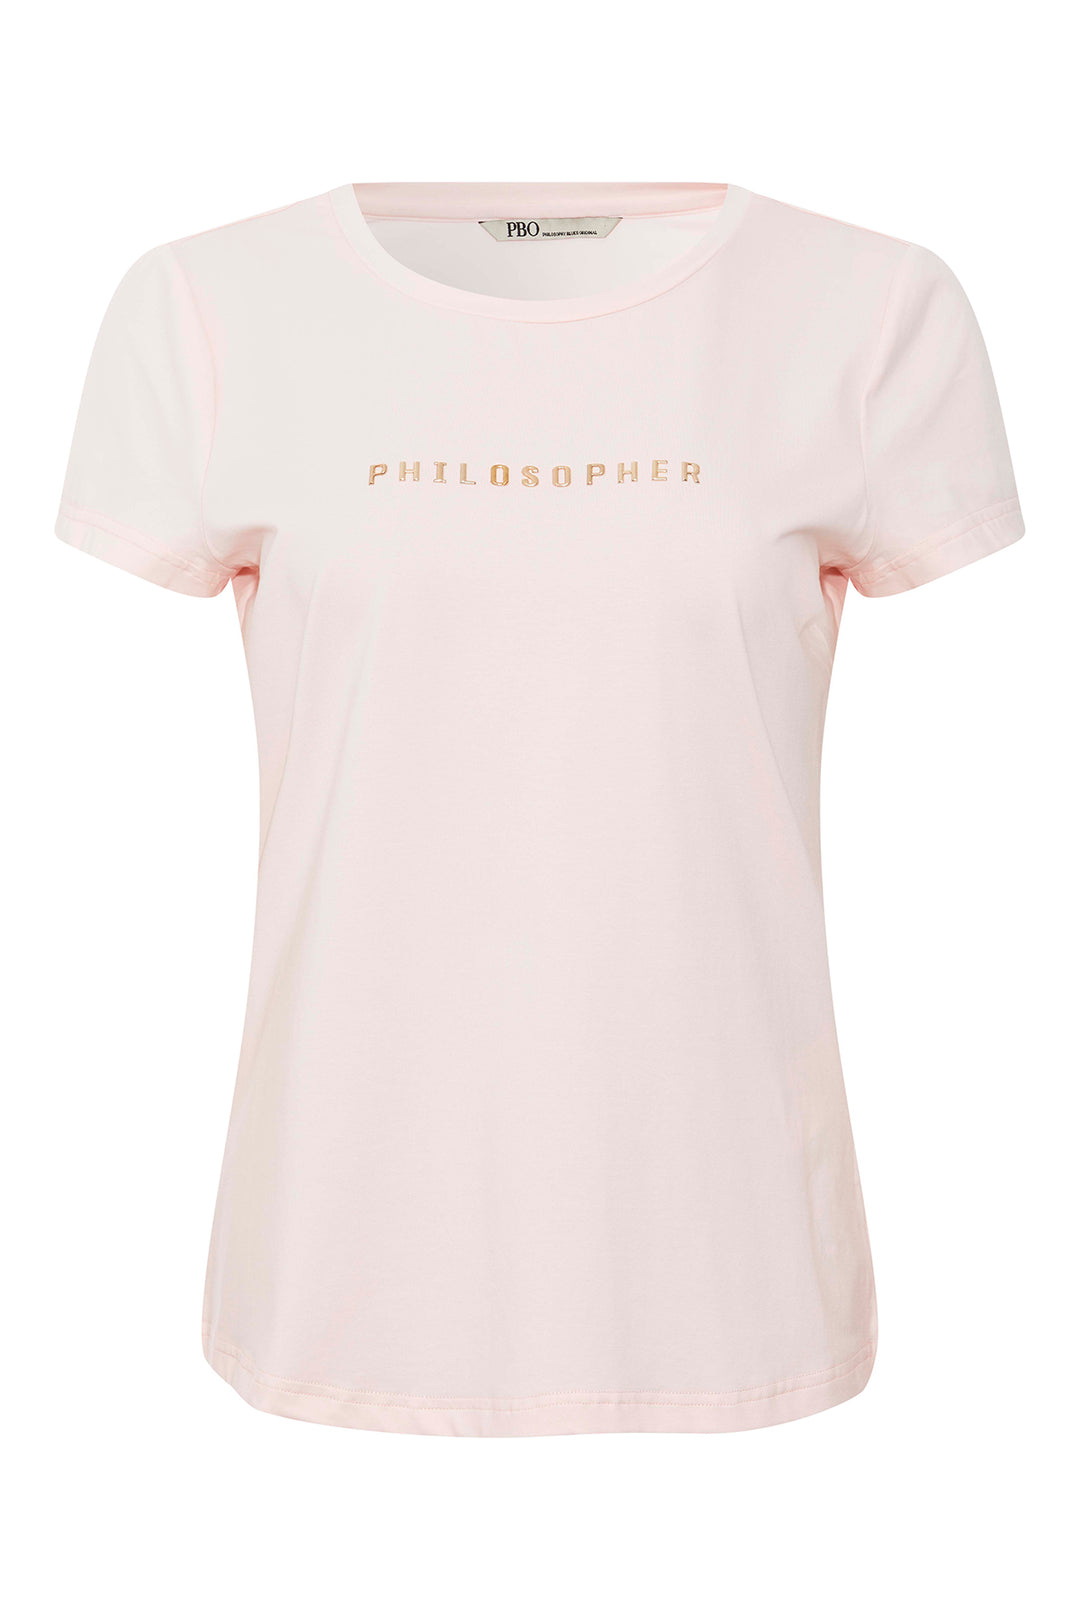 PBO Philosopher T-shirt T-SHIRTS 82 Strawberry cream